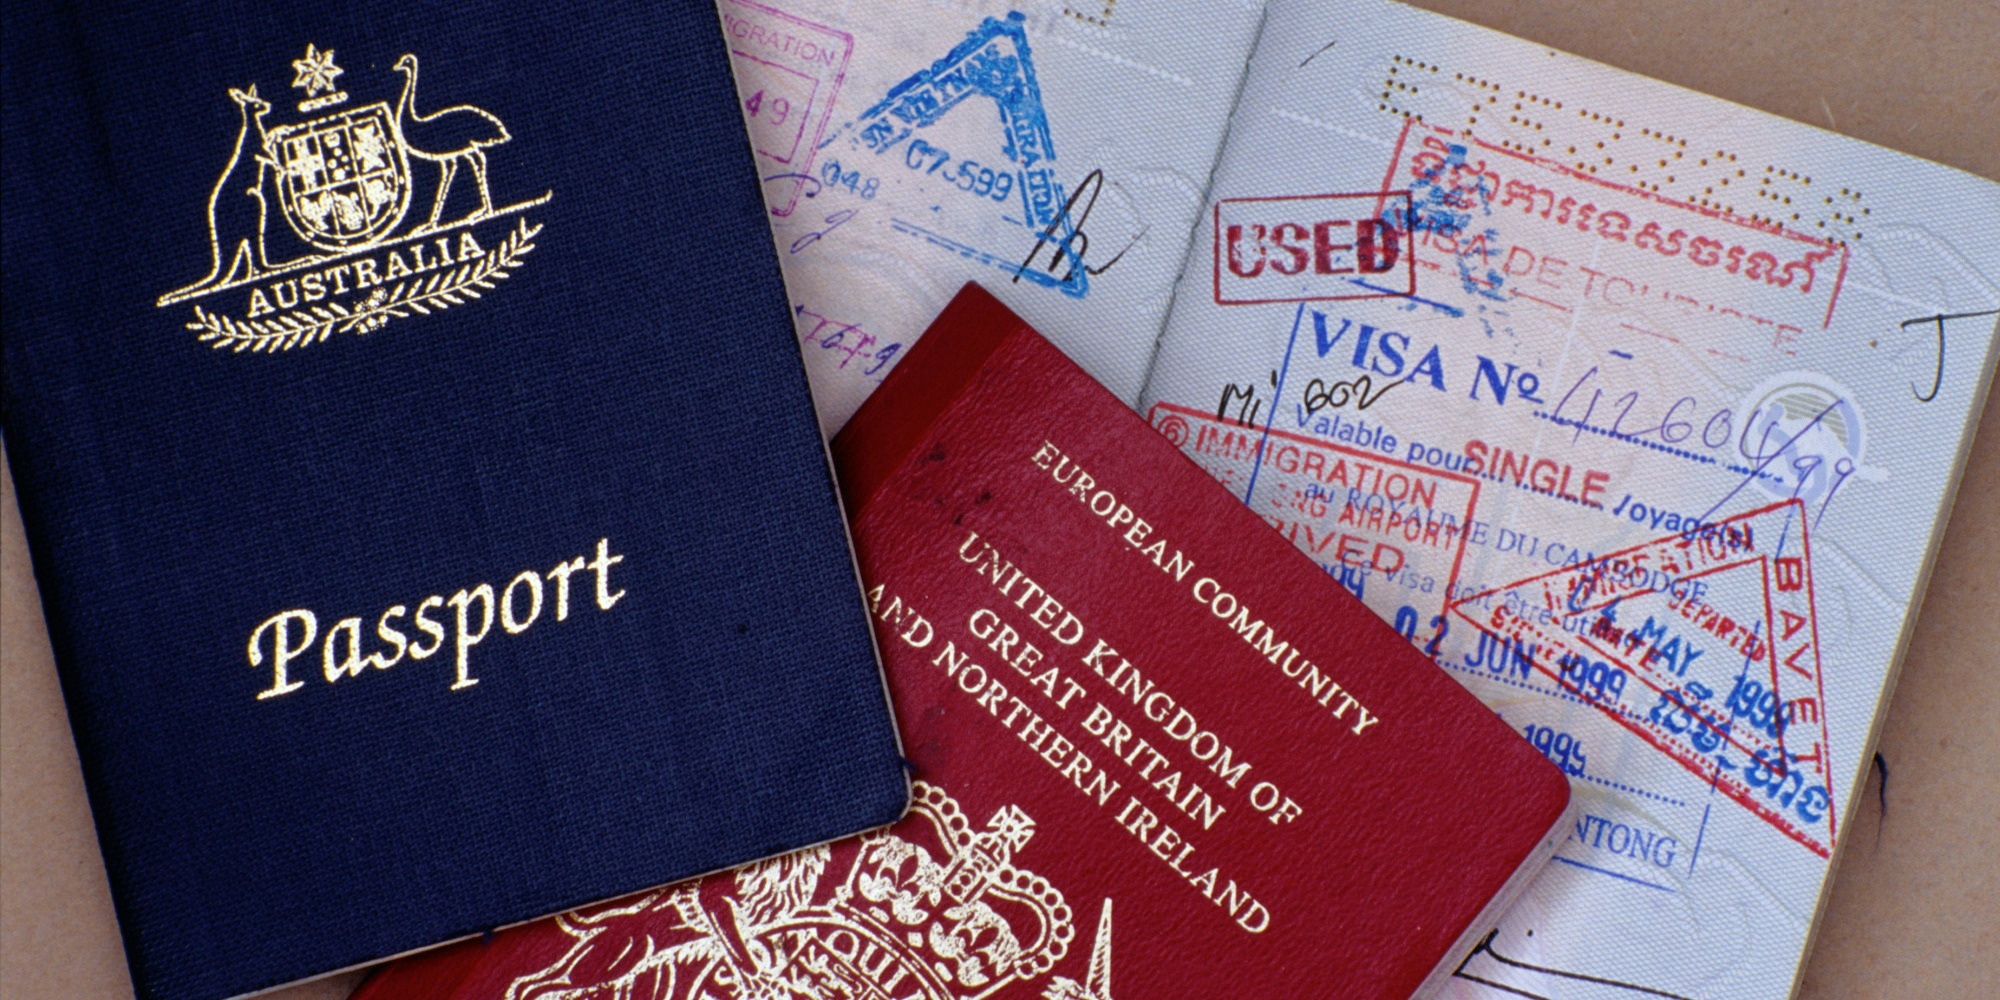 Ölkəyə gələn xarici turistlərin pasportlarına   möhür vurulmayacaq